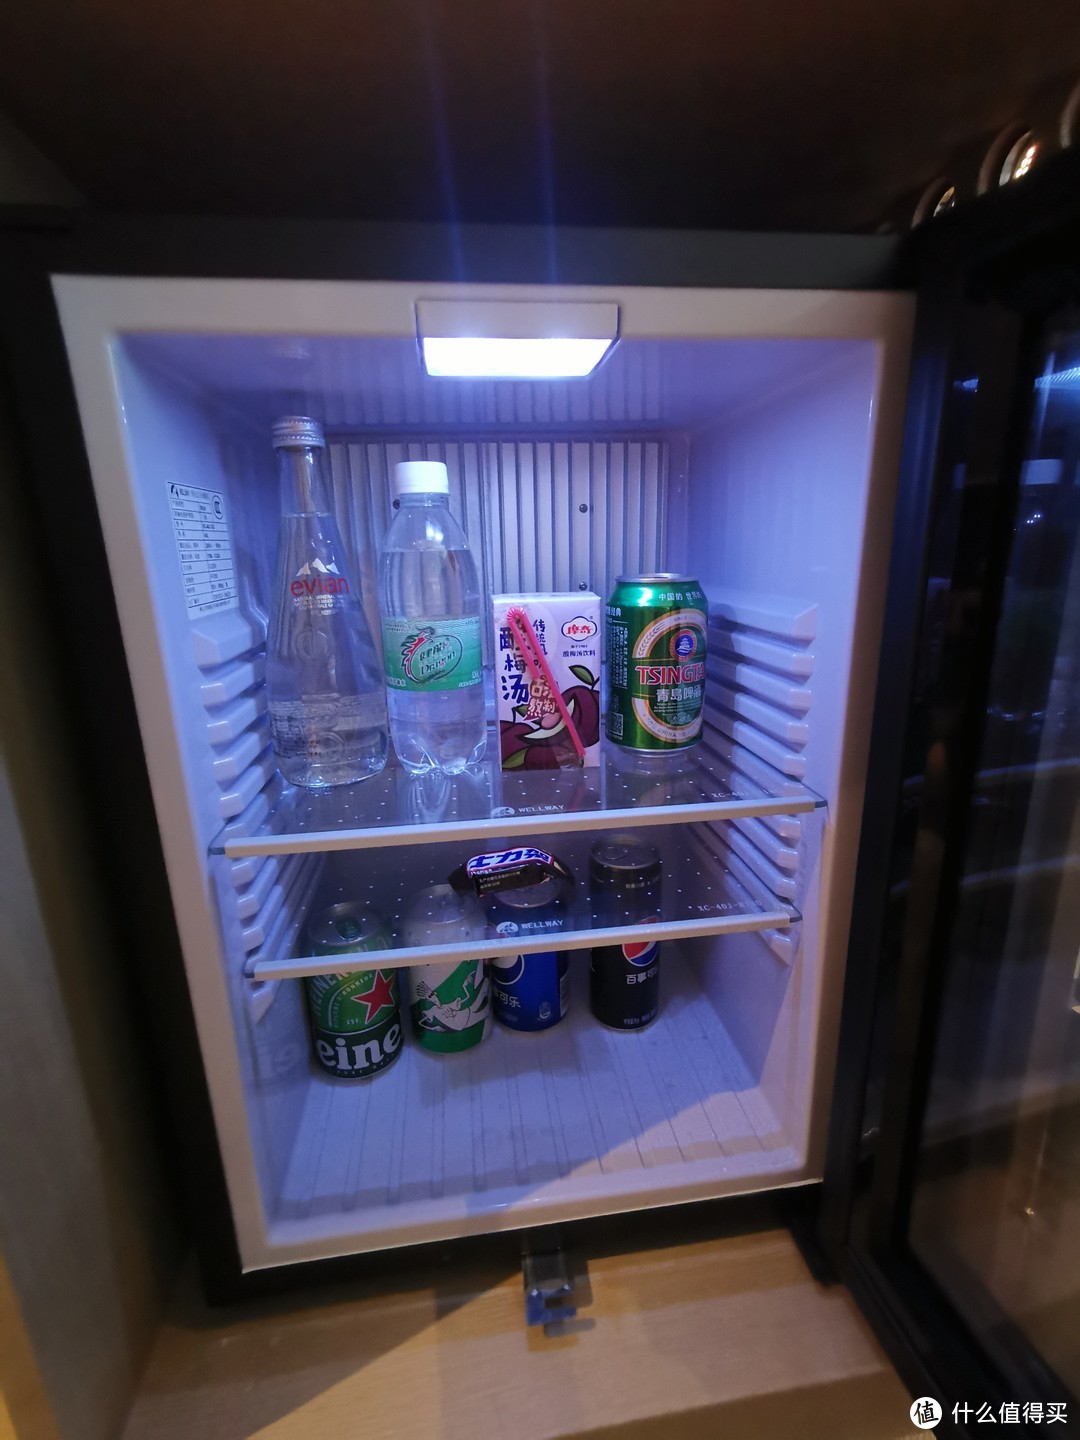 冰箱饮料挺多的